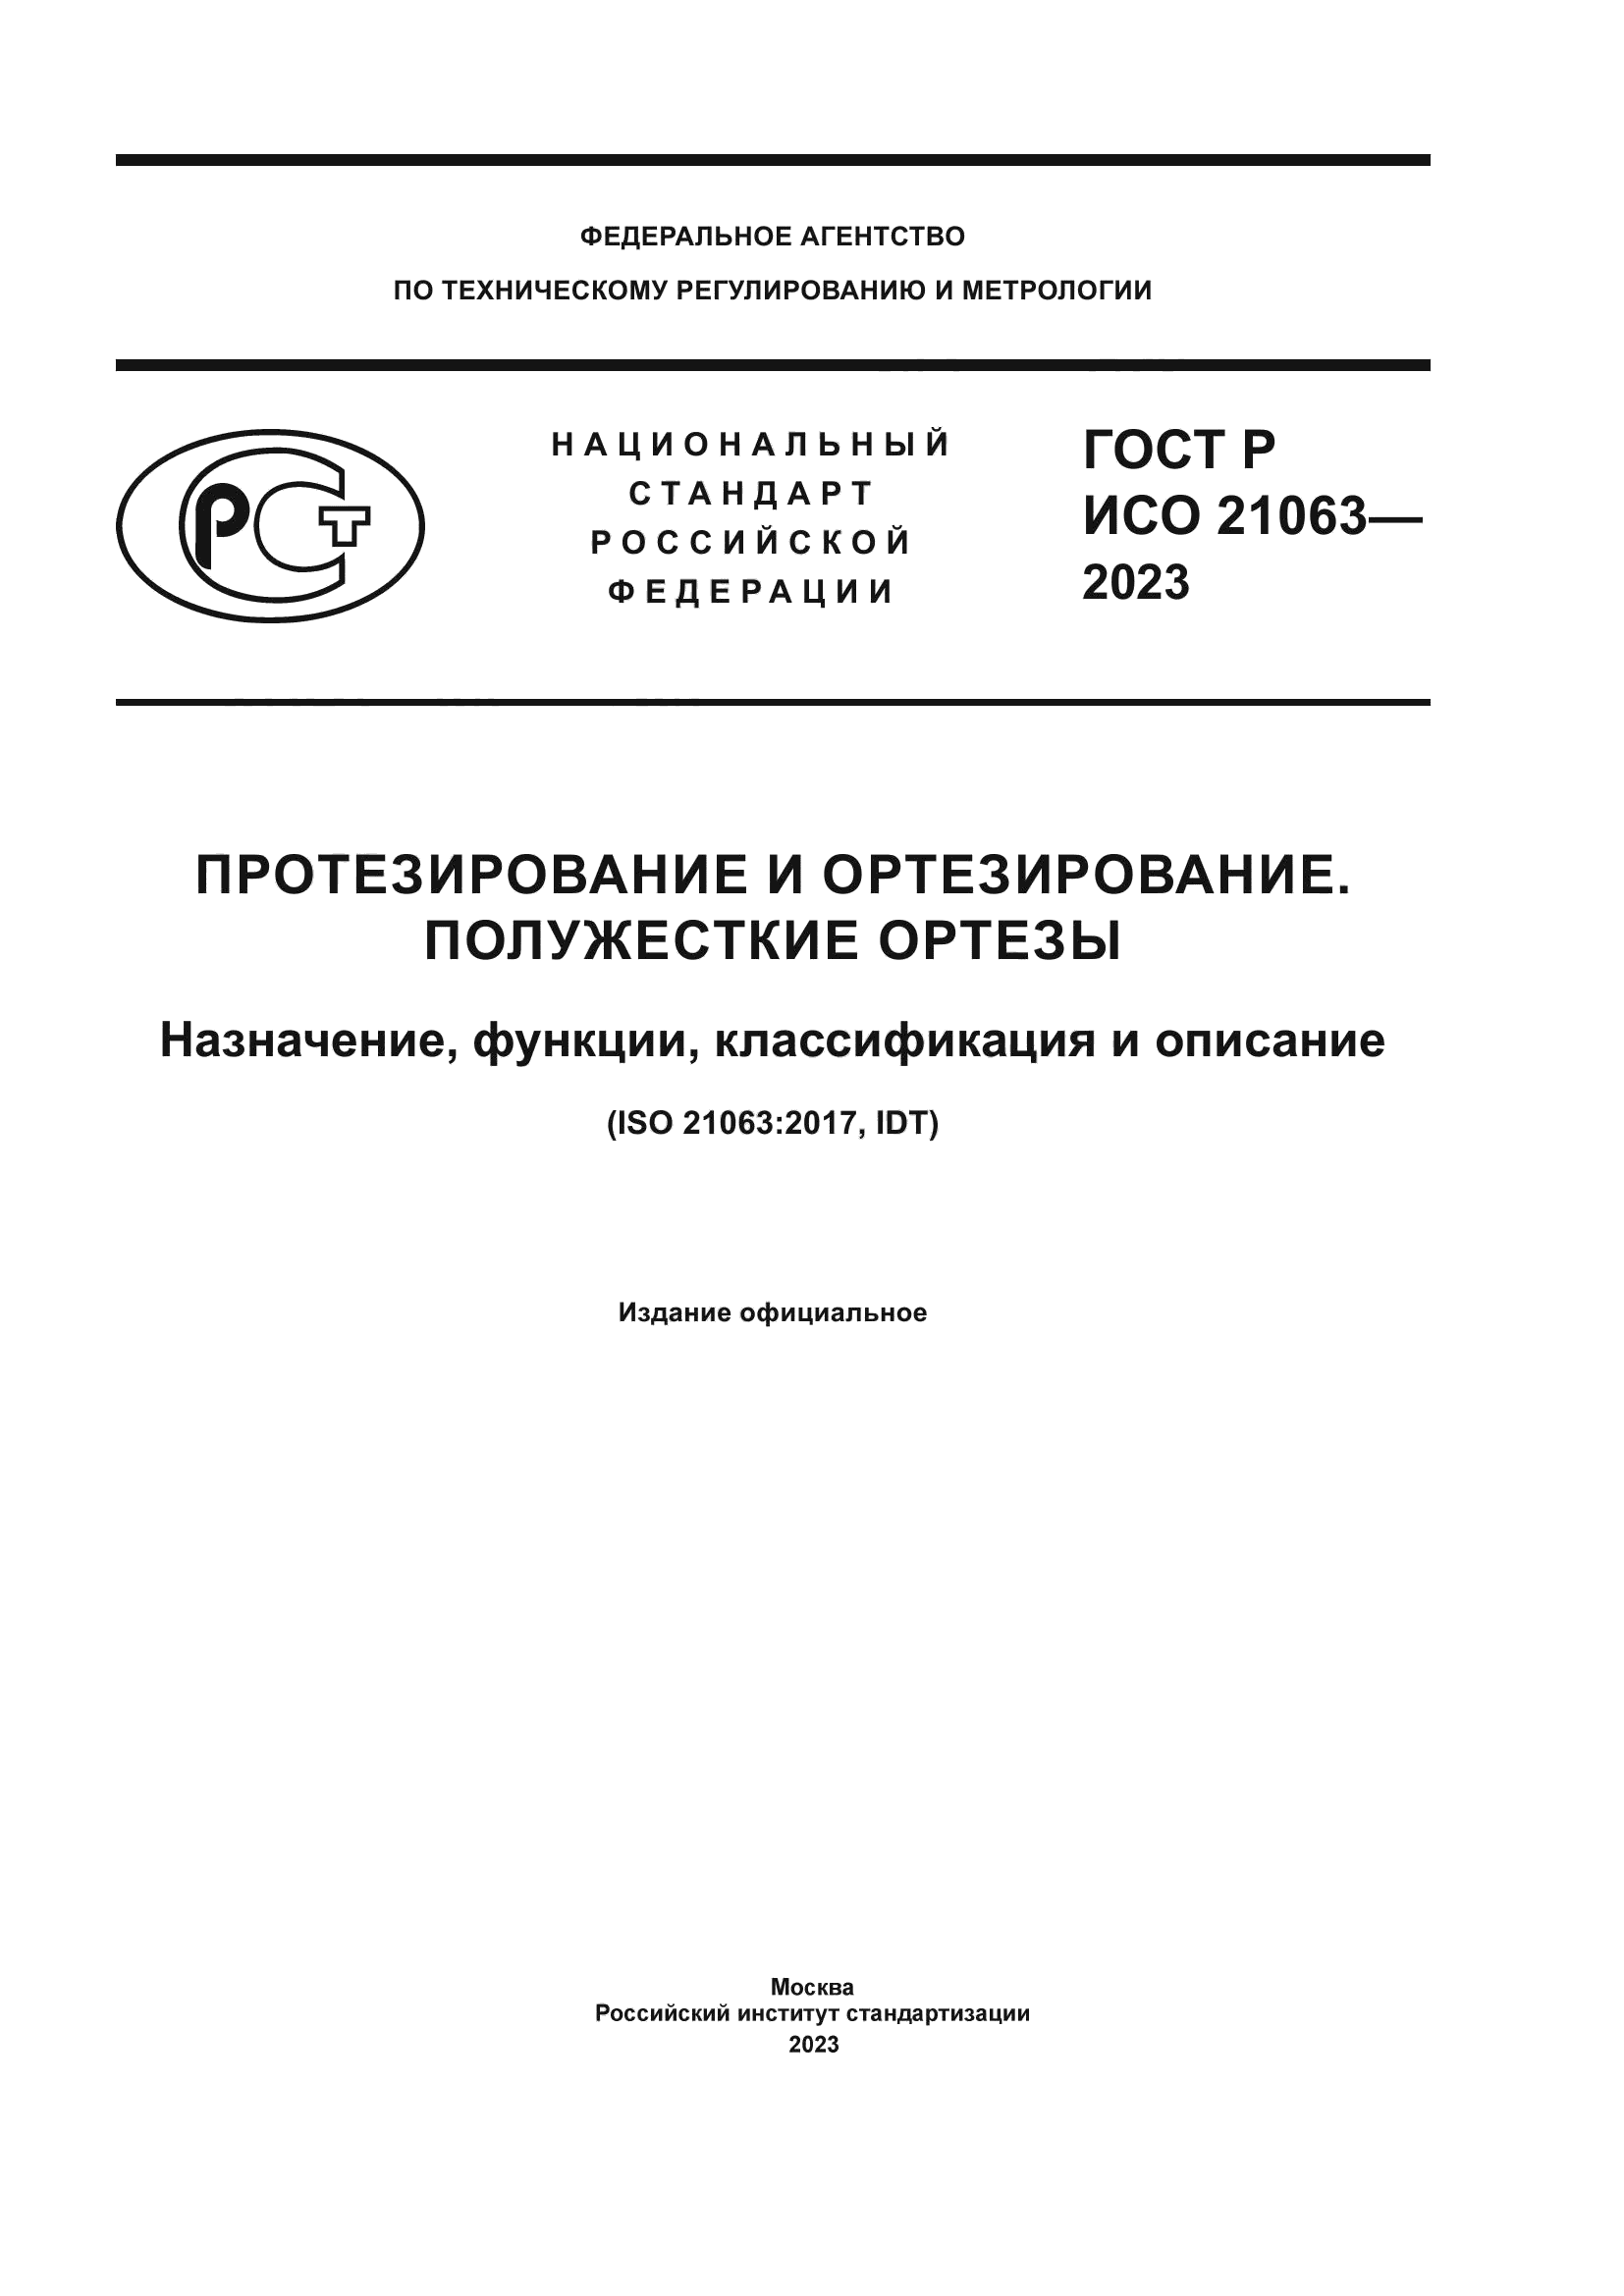 ГОСТ Р ИСО 21063-2023